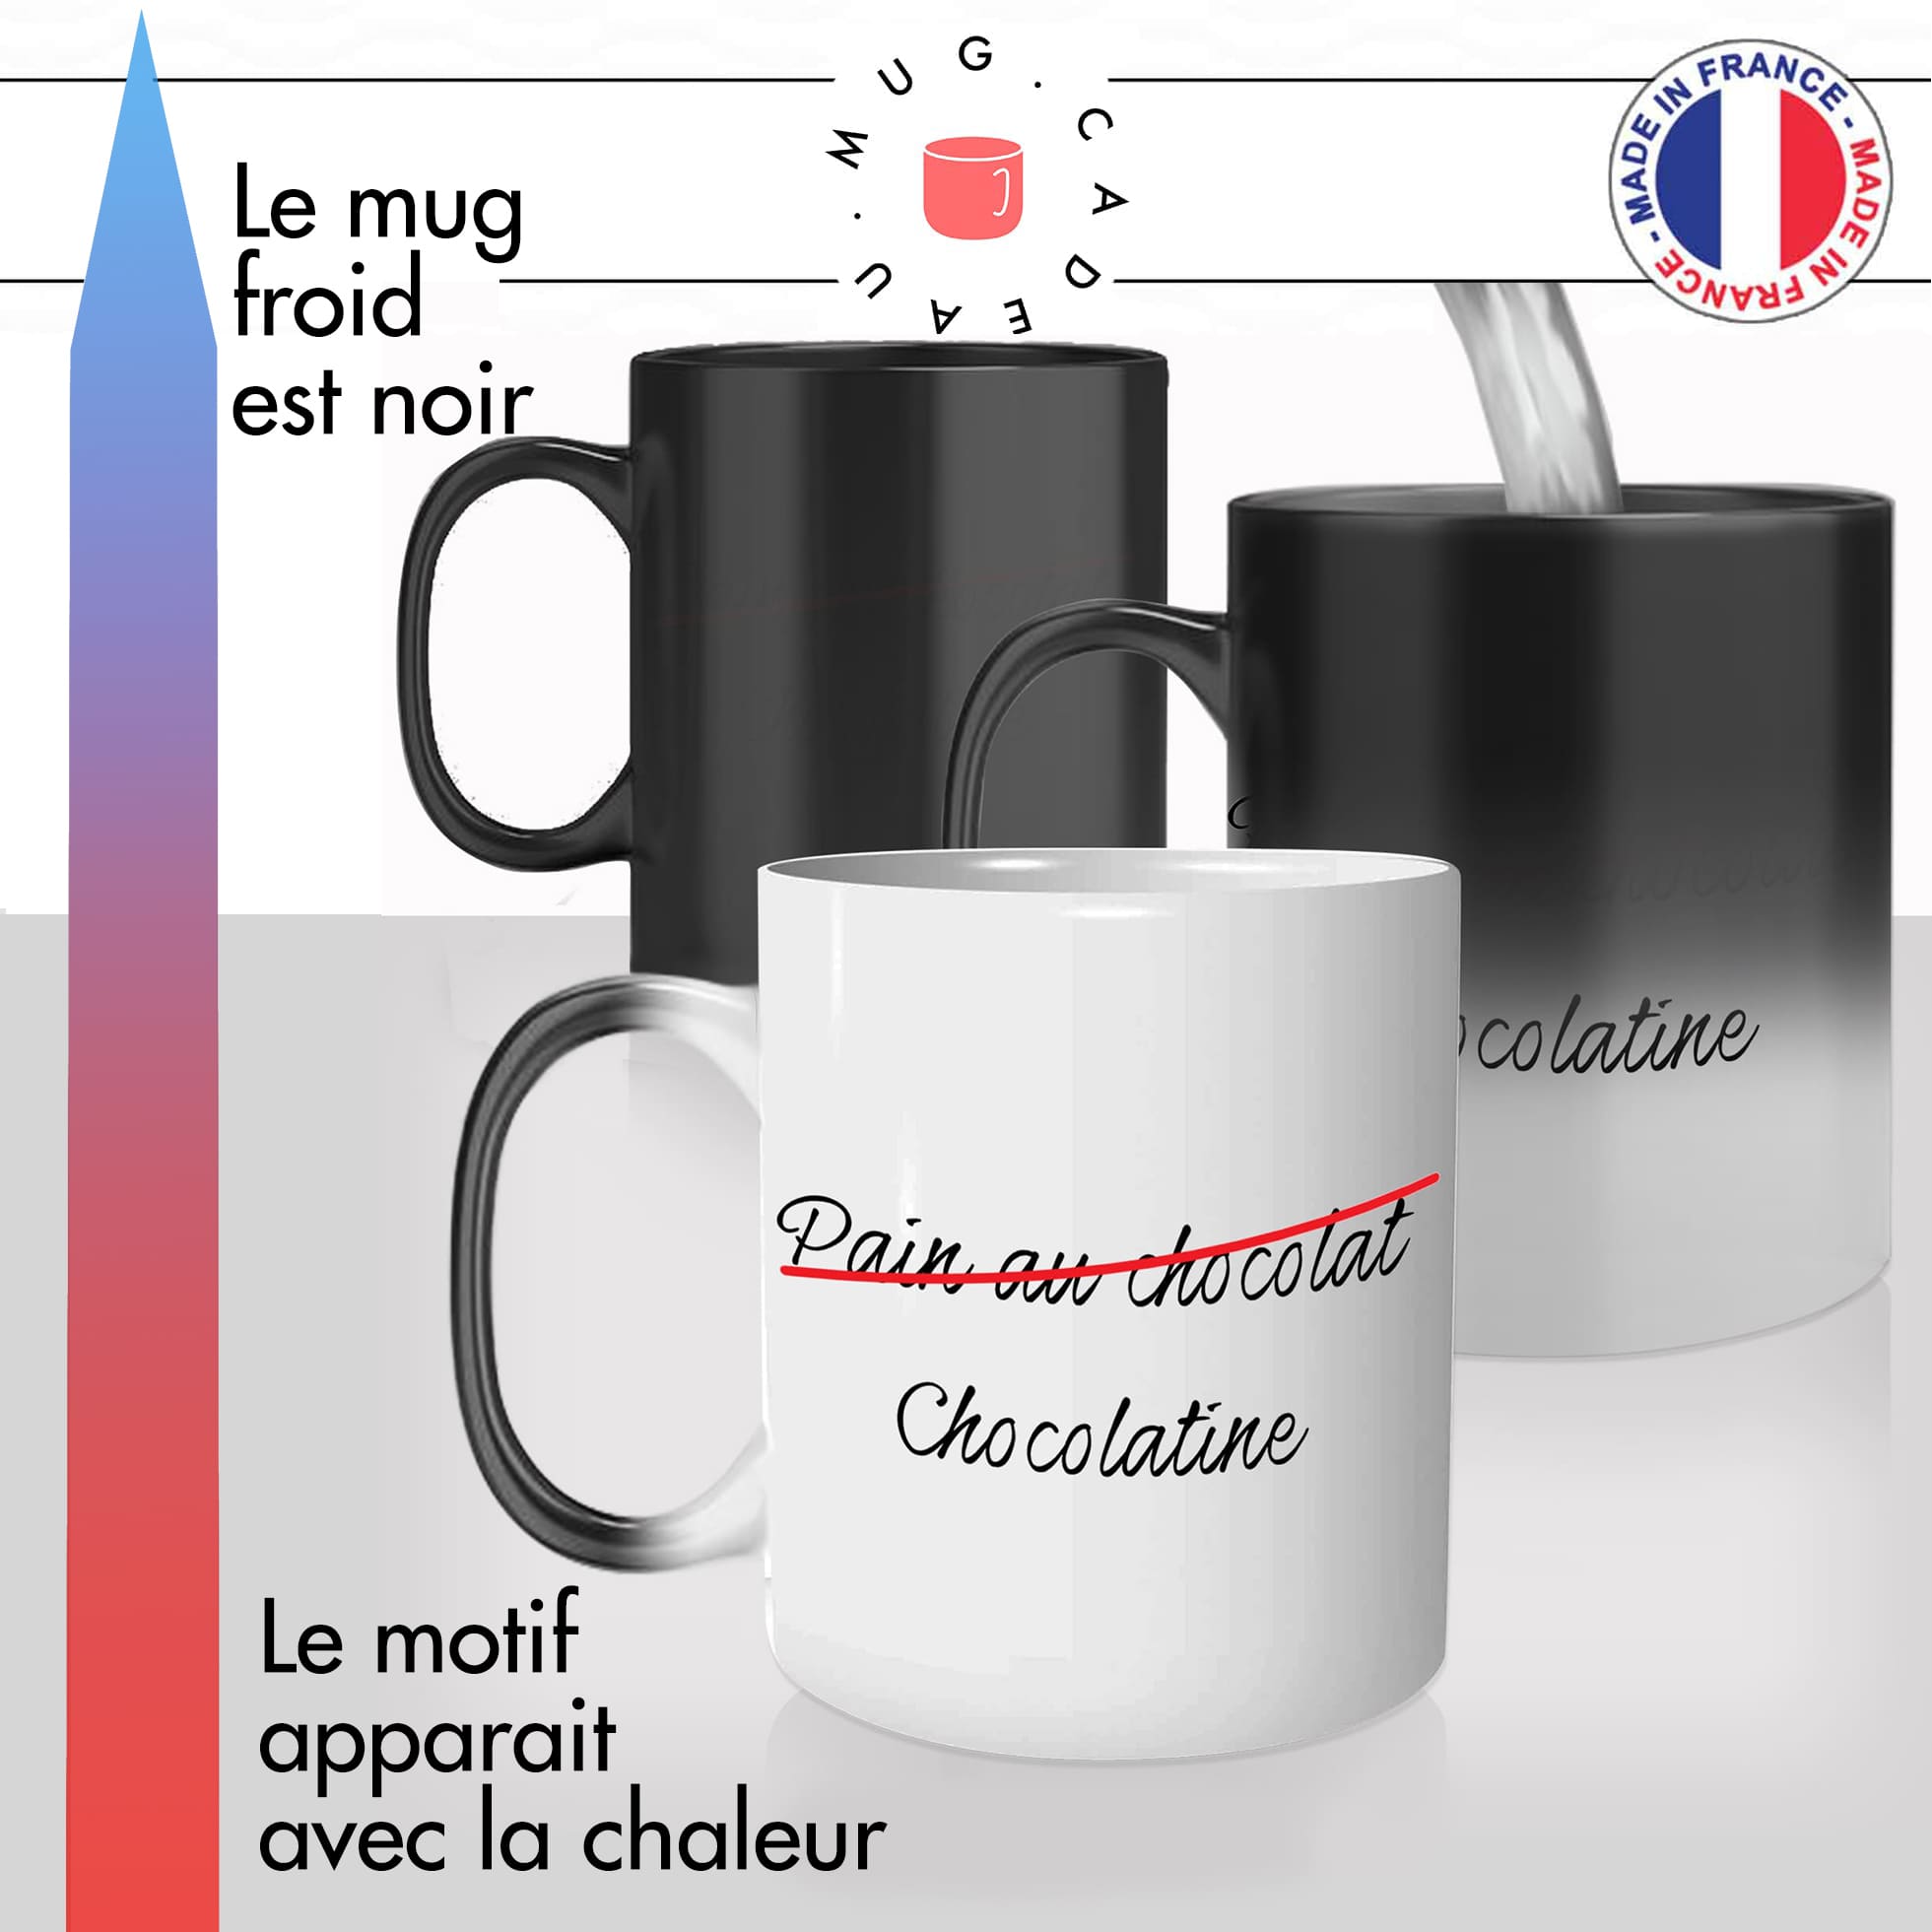 mug magique thermoréactif thermo chauffant personnalisé chocolatine vienoiserie francaise boulagerie idée cadeau original